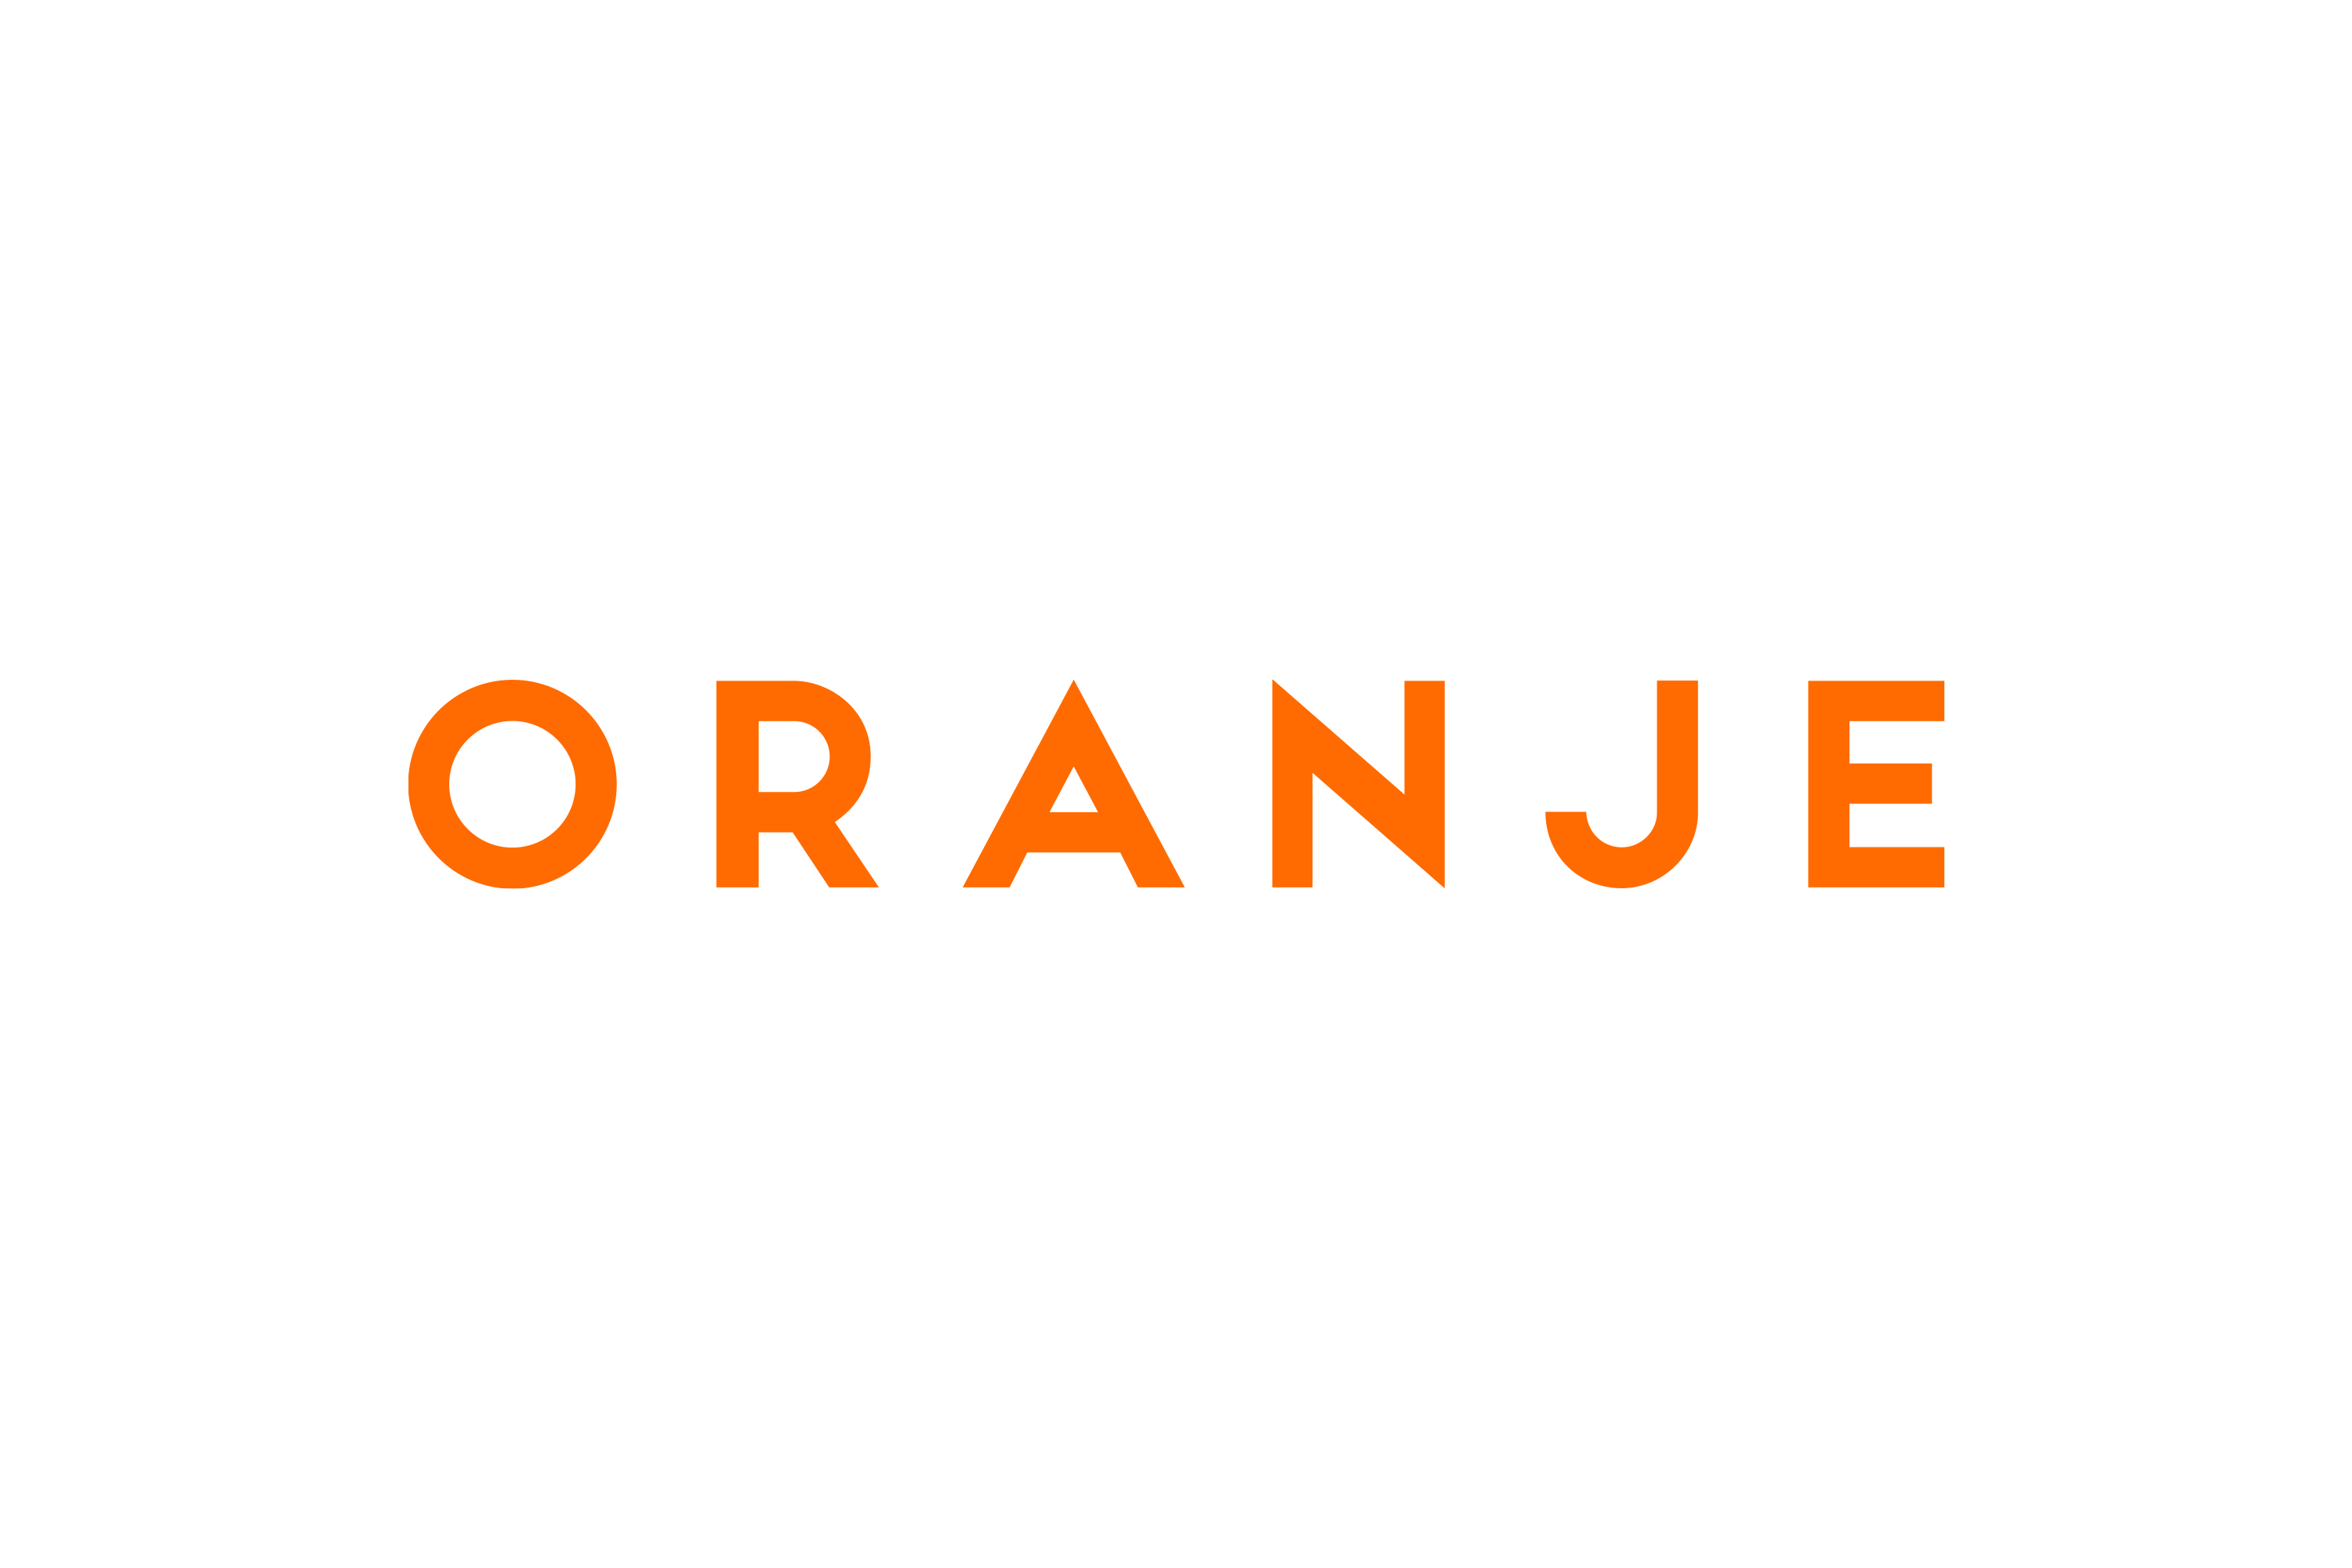 Chris-Reynolds-Logos-Oranje-Logotype